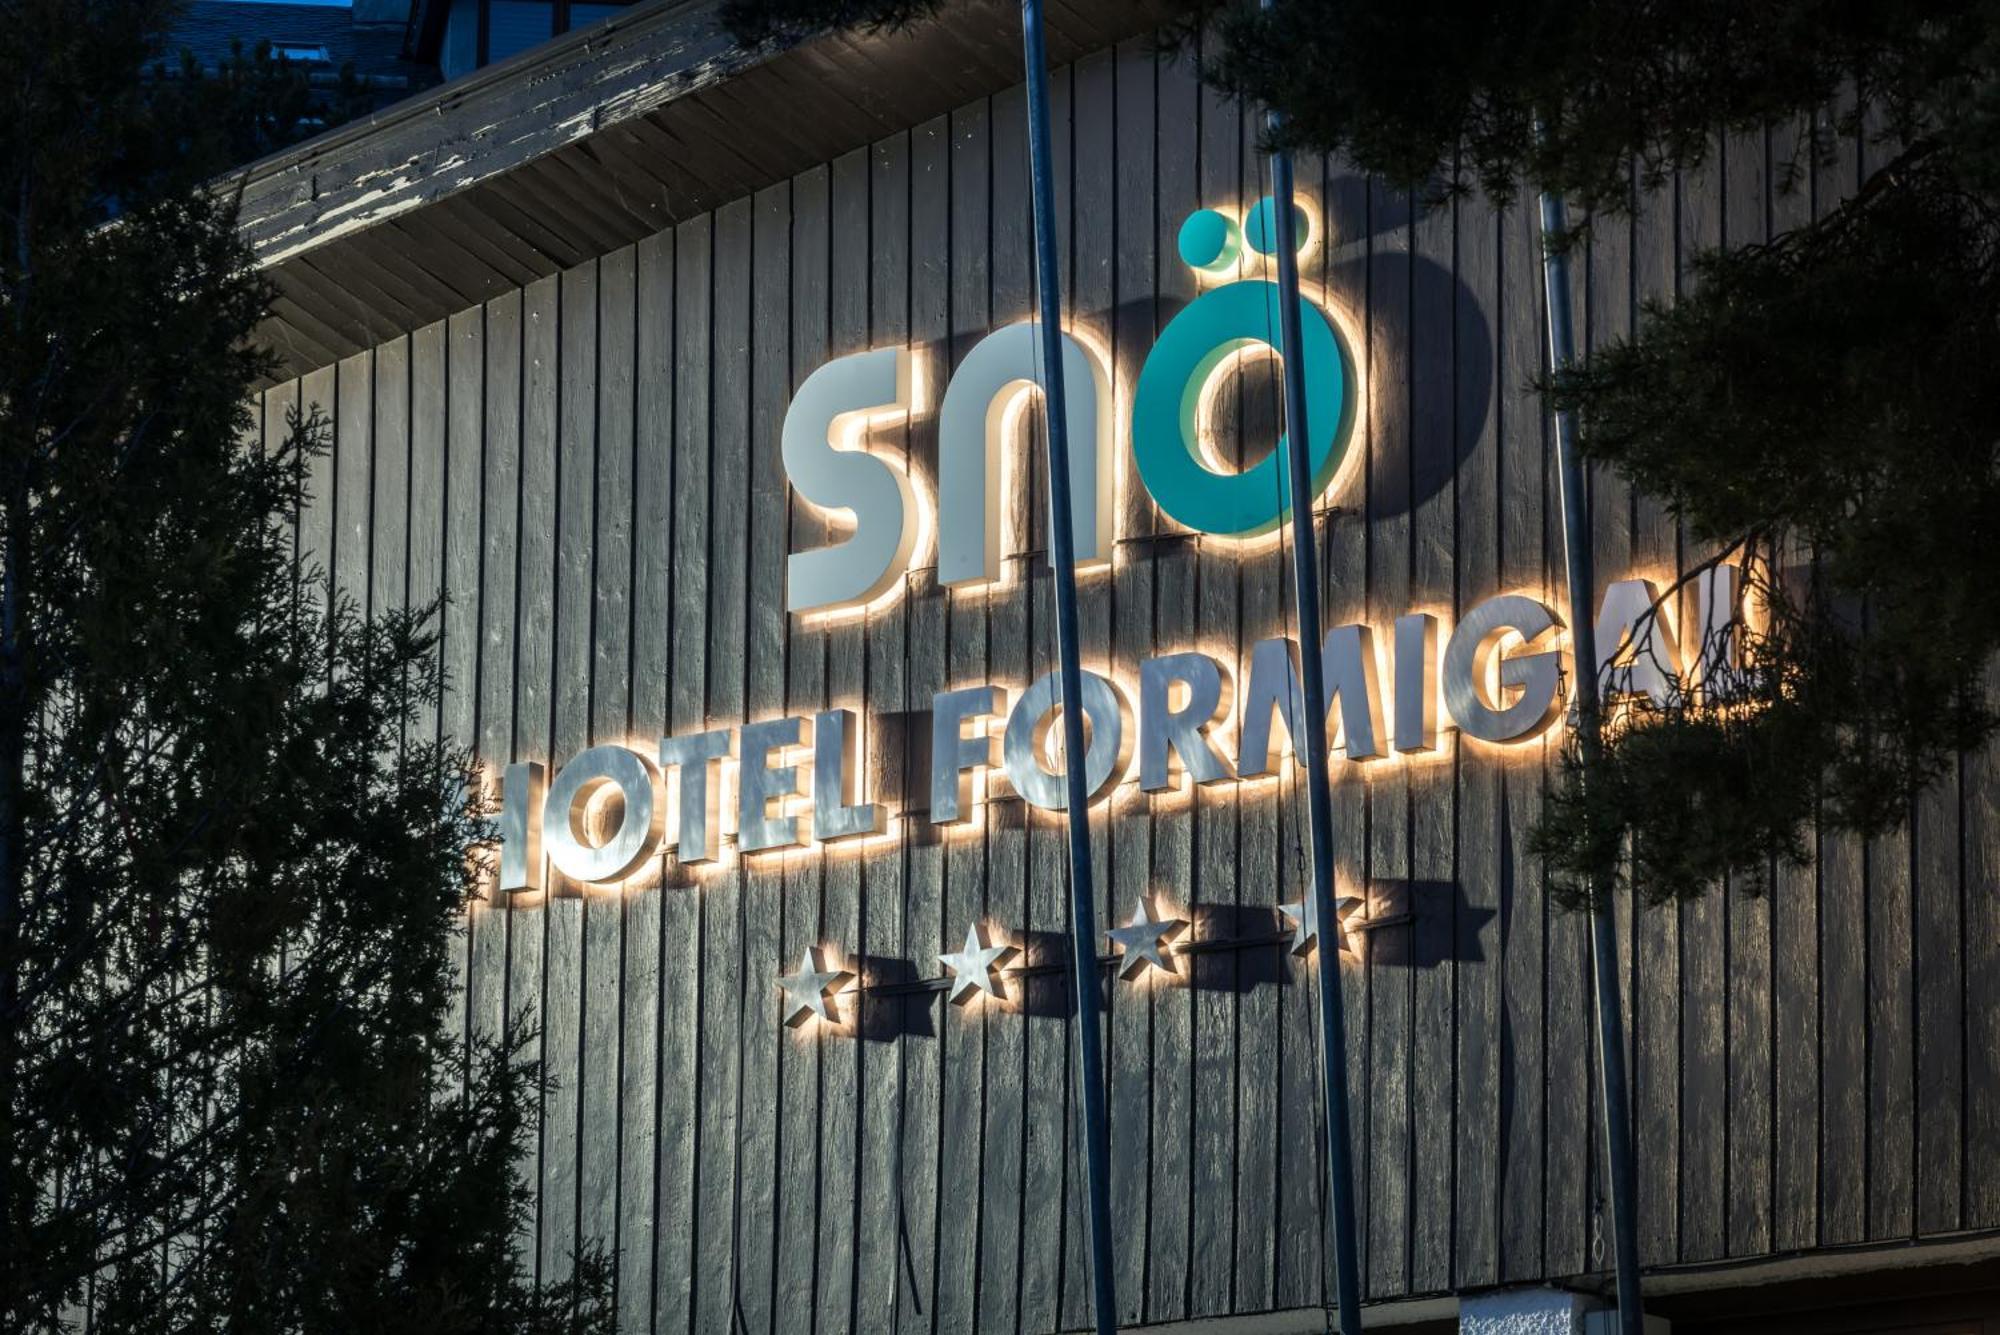 Sno Hotel Formigal Zewnętrze zdjęcie